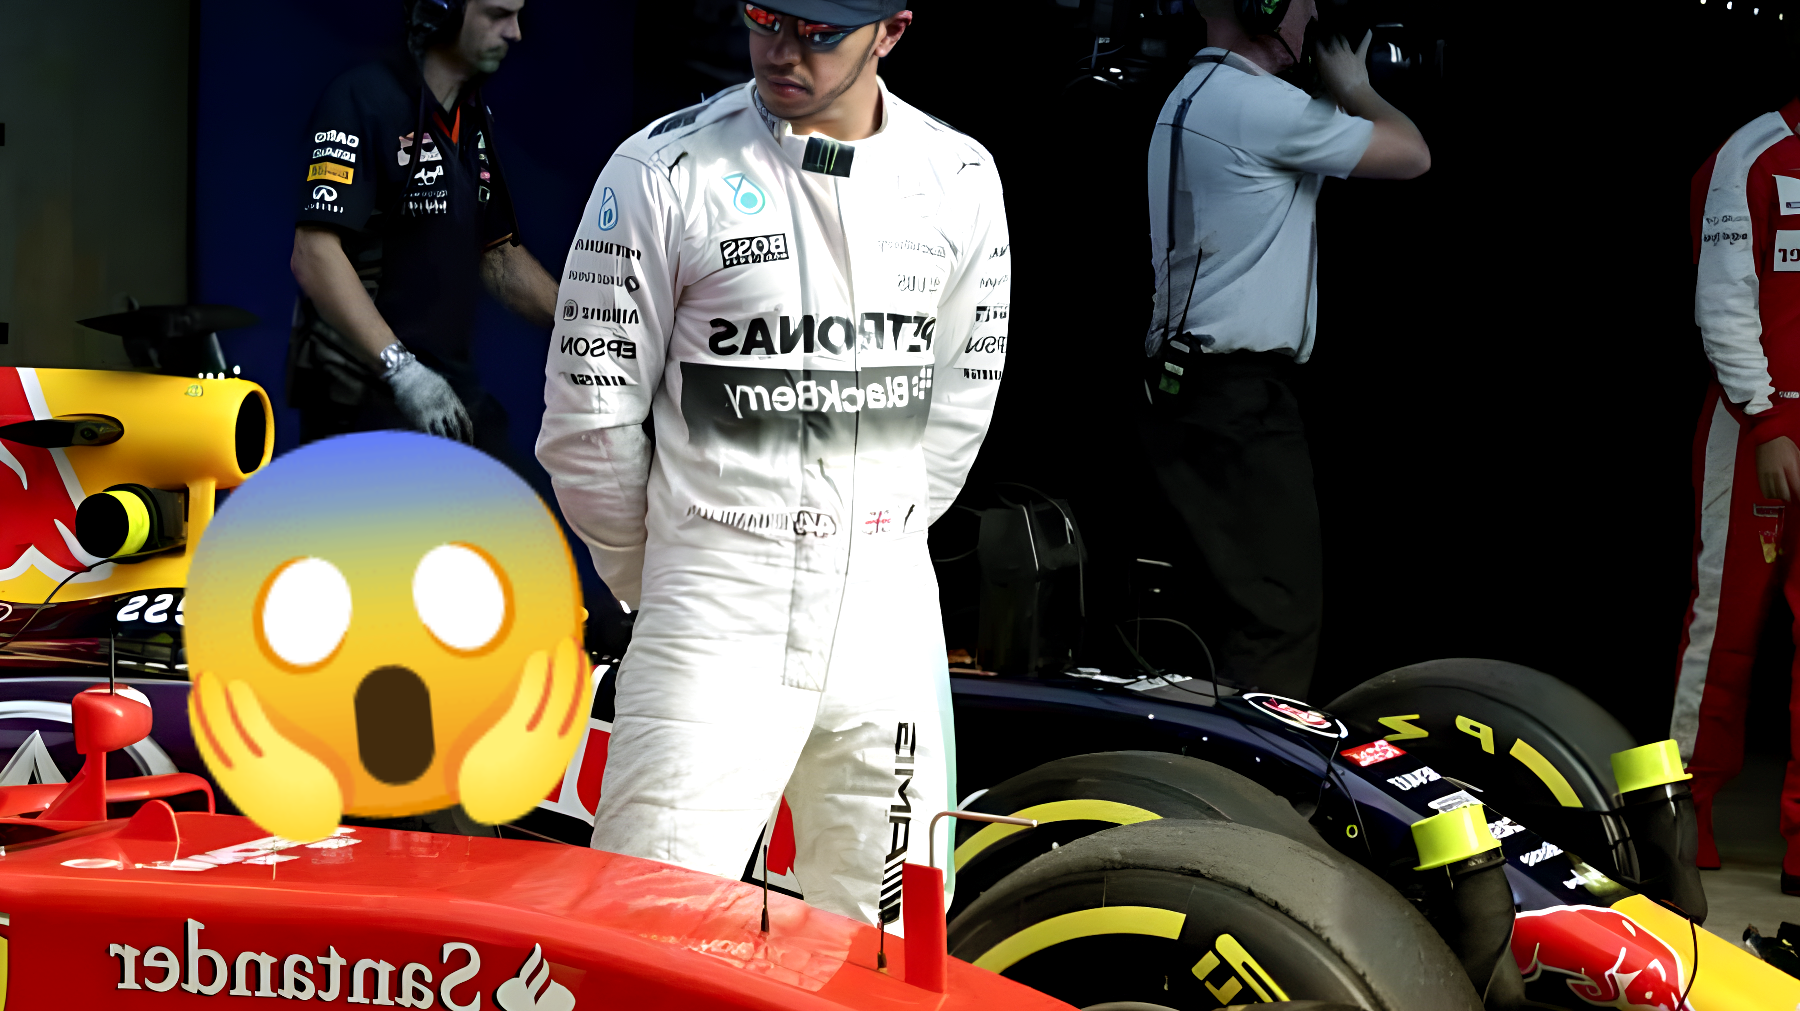 Colpo di scena in Formula 1: Hamilton passa alla Ferrari da subito